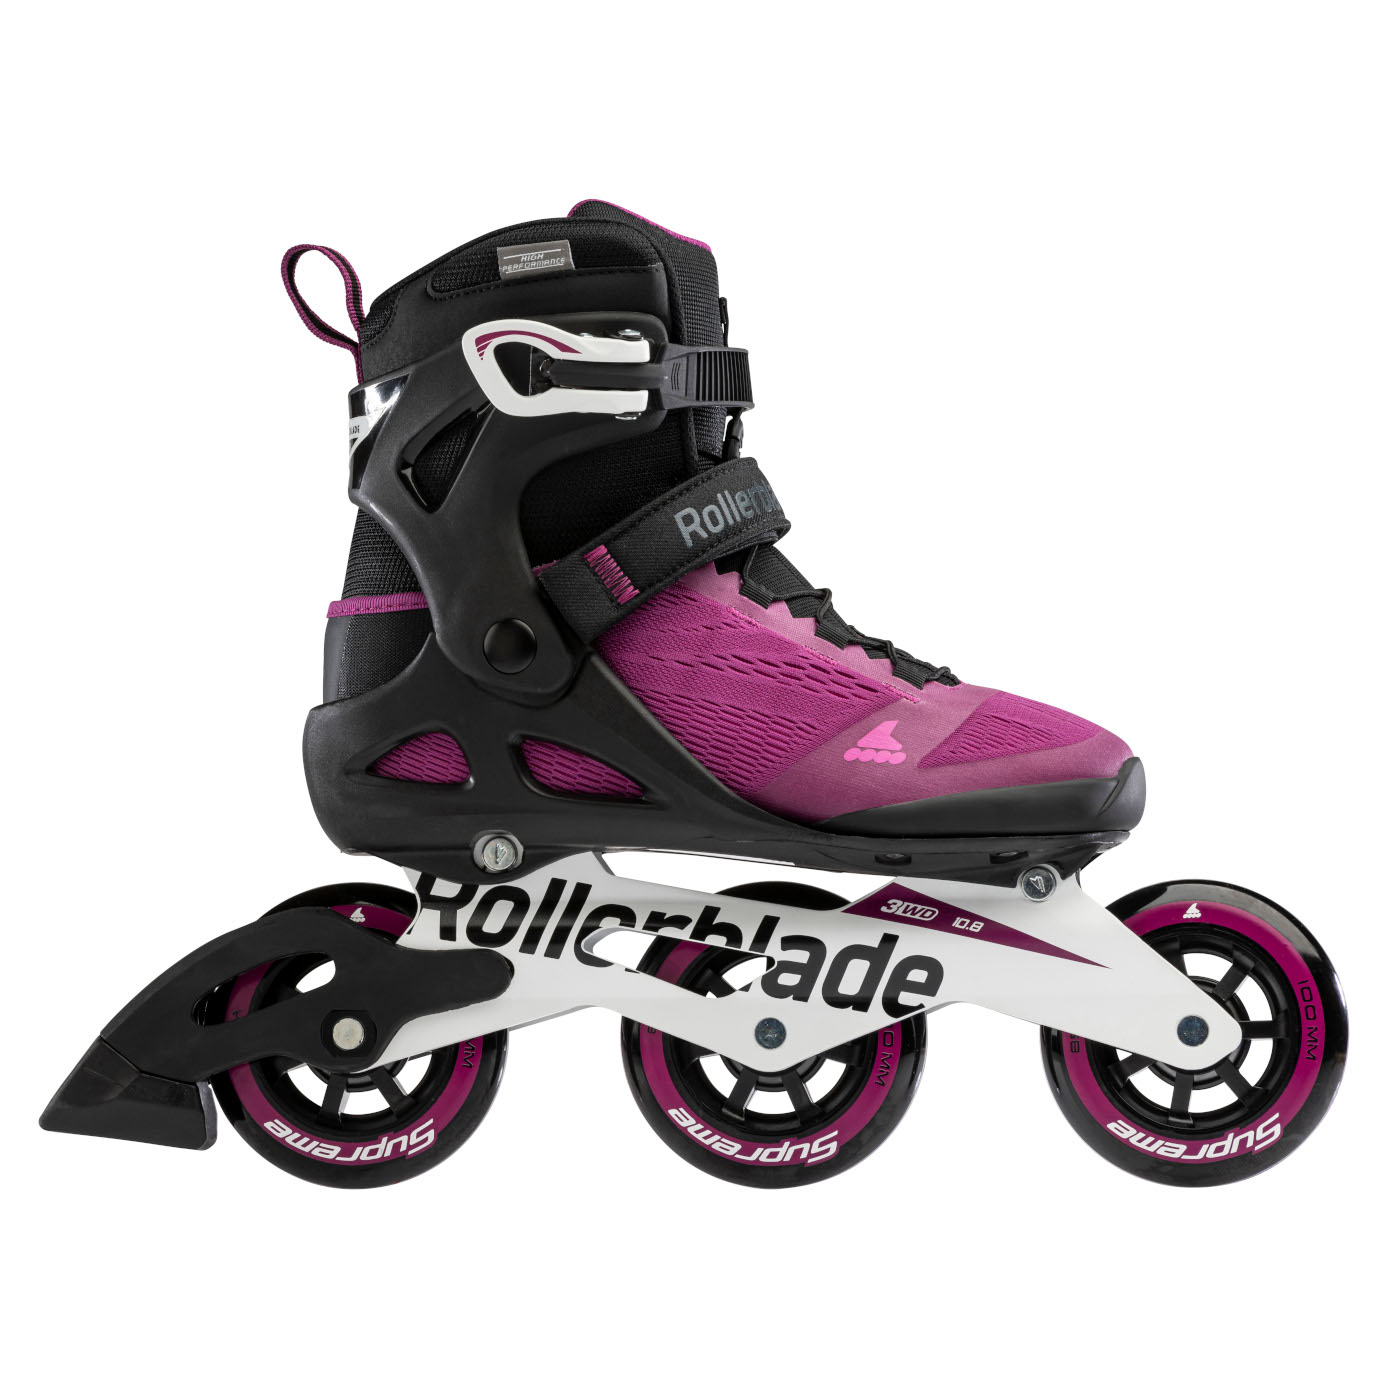 Produktbild von Rollerblade Macroblade 100 3WD W - Damen Fitness Inlineskates - violett/schwarz